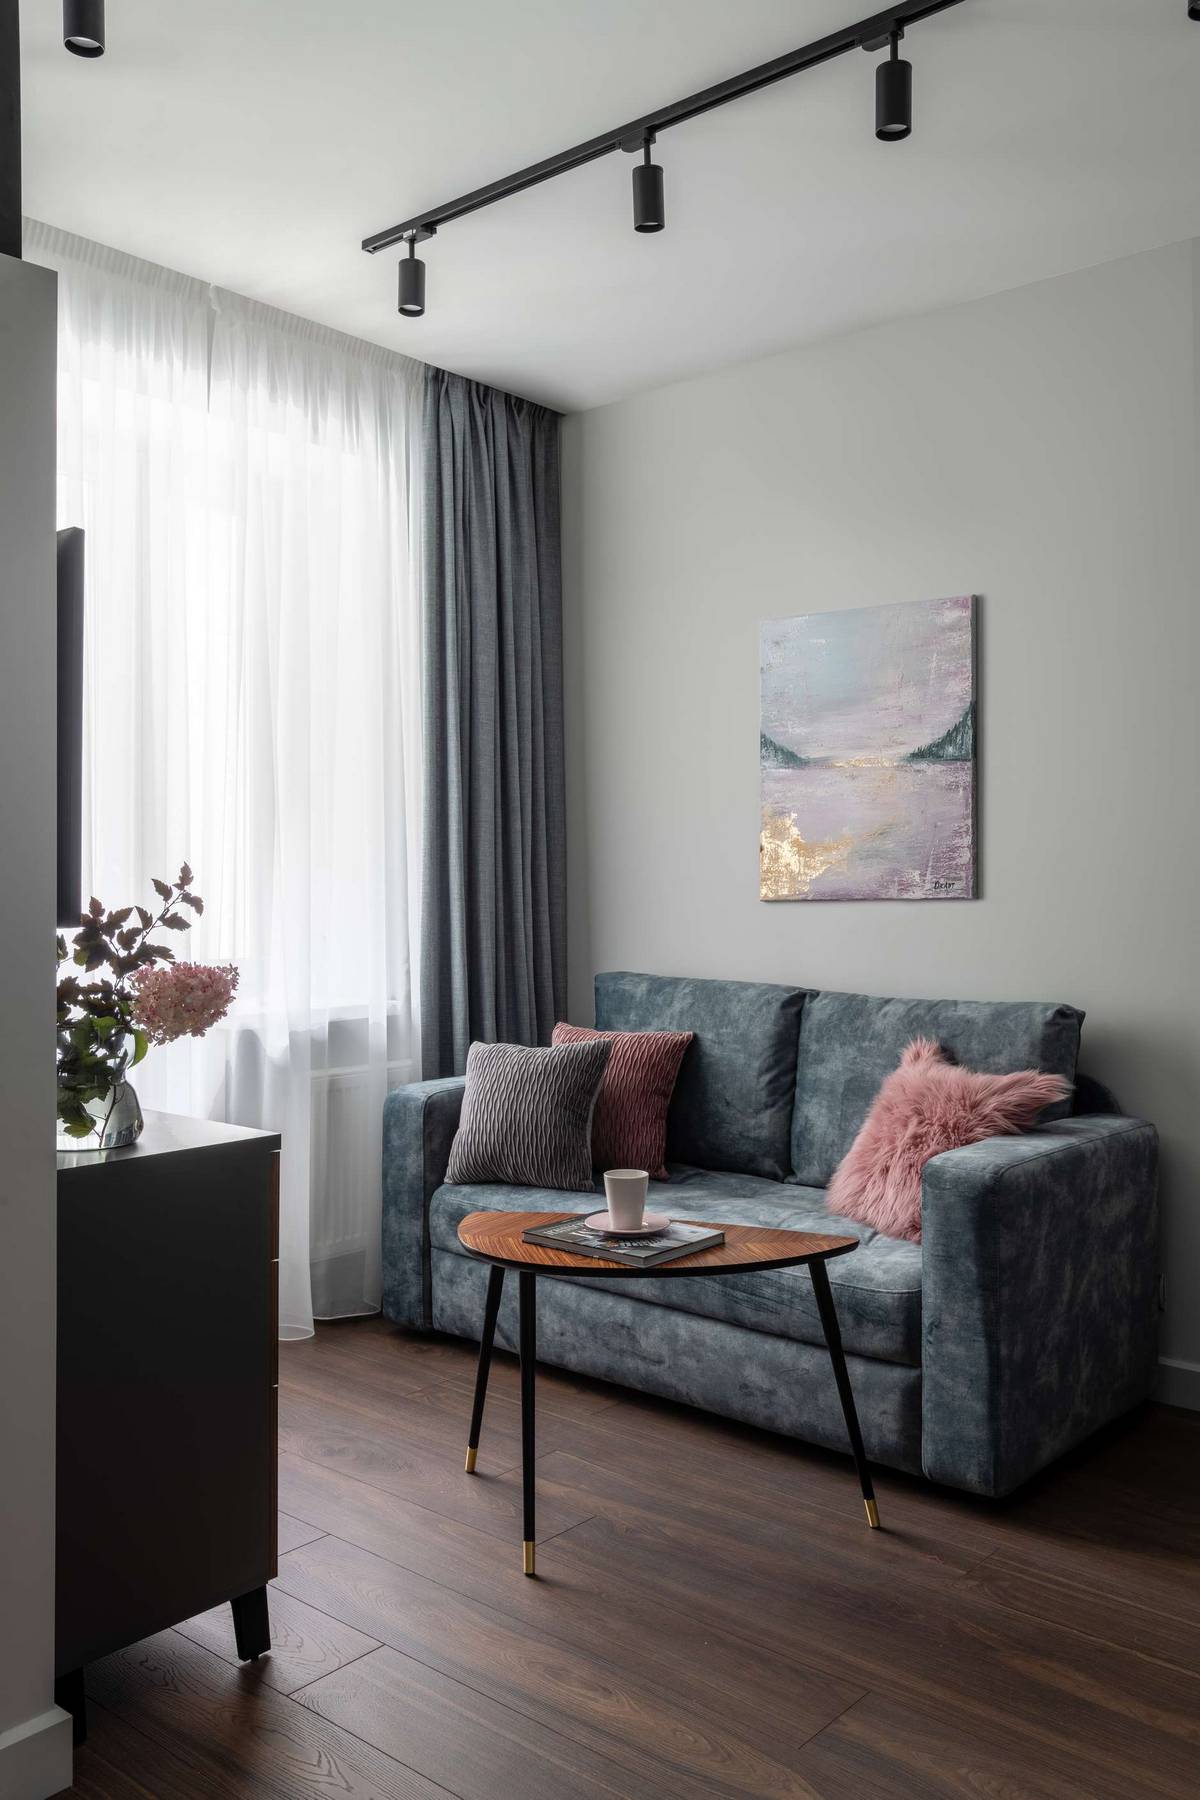 Phòng khách với chiếc ghế sofa đôi êm ái, bên cạnh ô cửa sổ lắp rèm che nhẹ nhàng, bức tranh trừu tượng và đặc biệt là chiếc bàn nước hình bán nguyệt độc đáo.